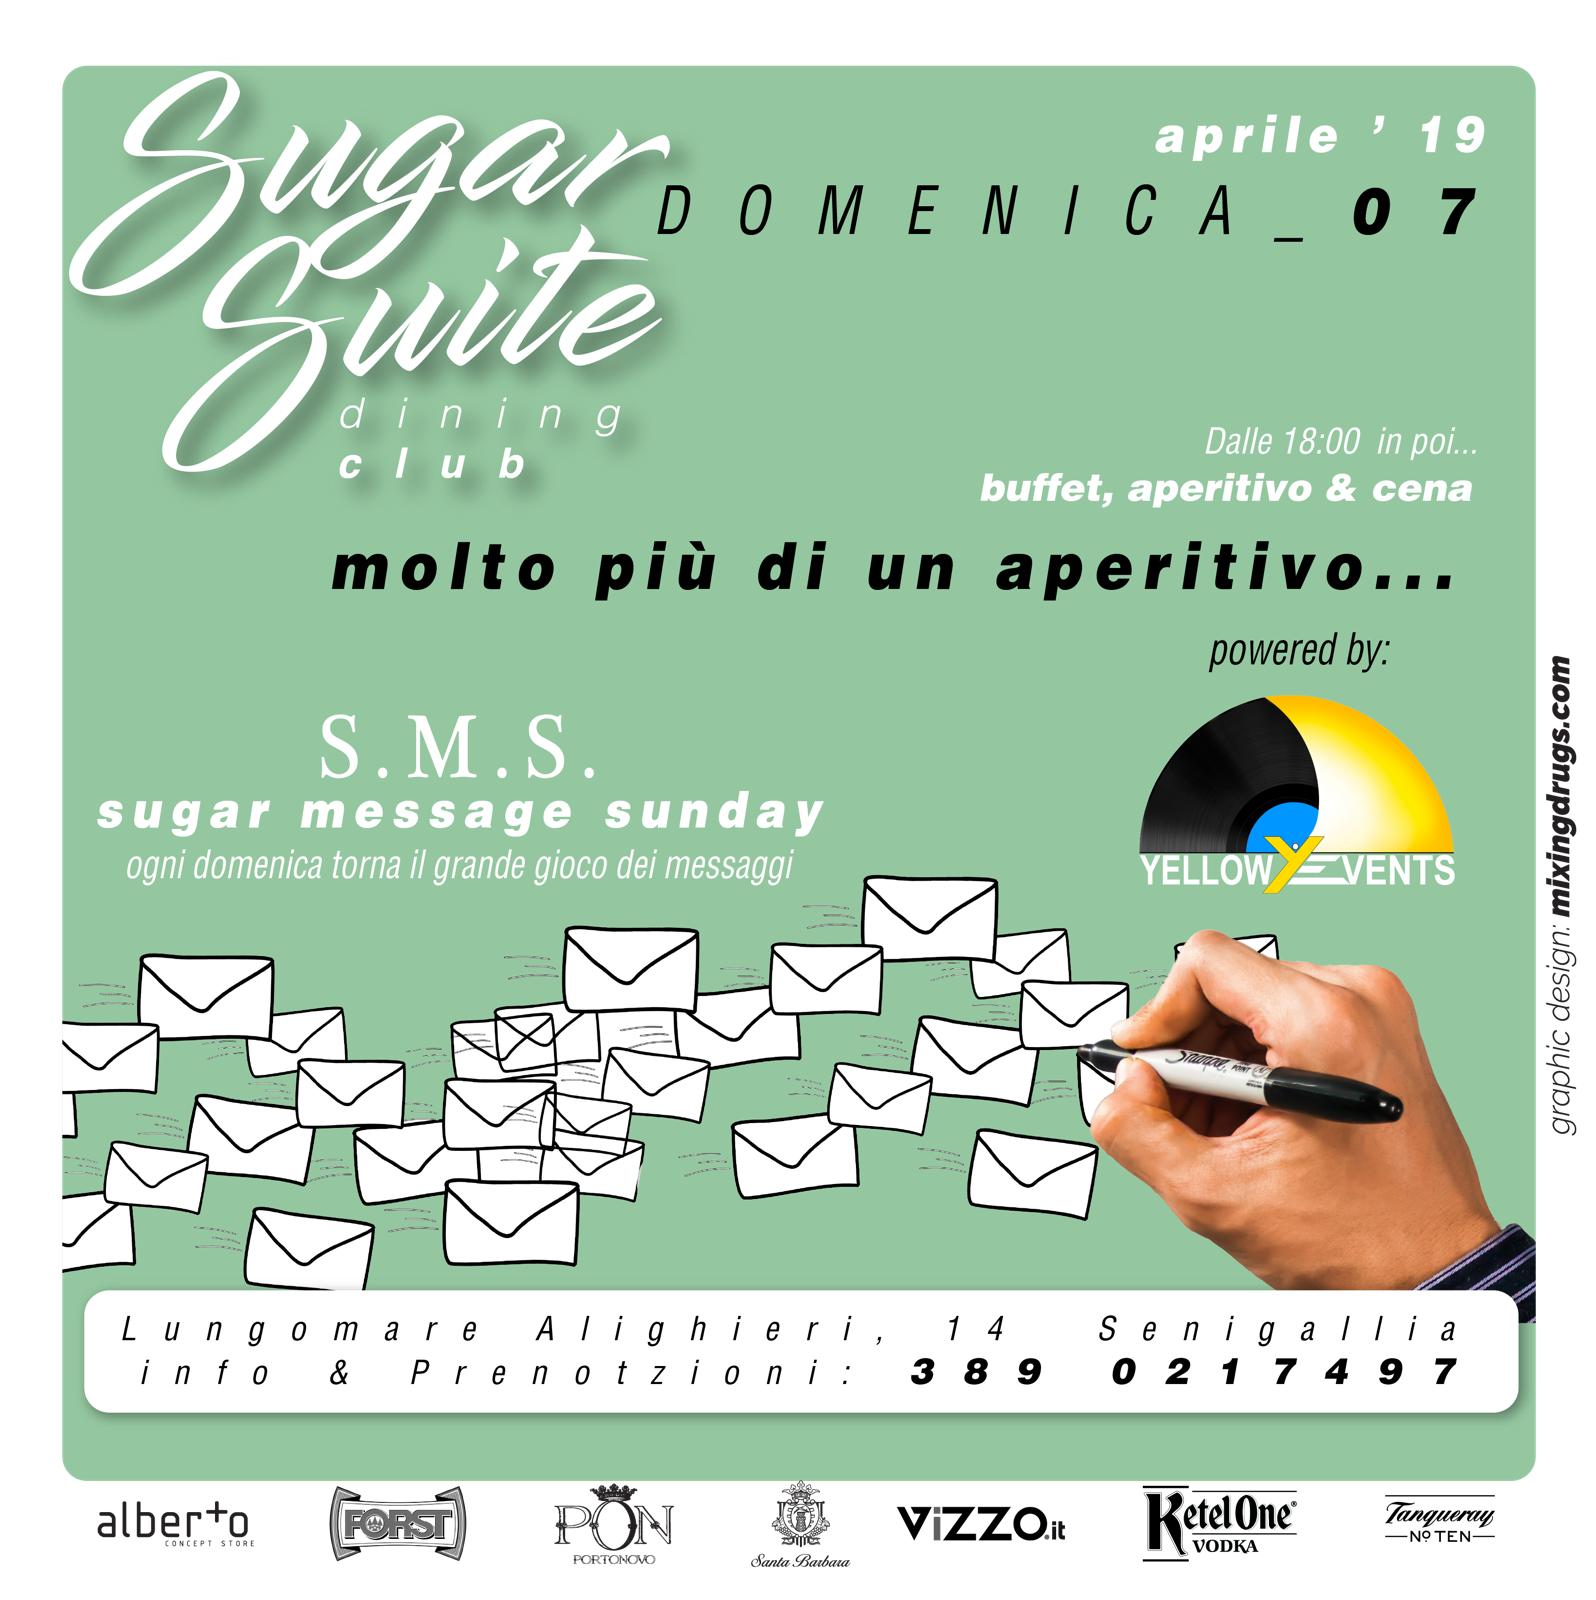 Sugar Suite Senigallia Message Sunday